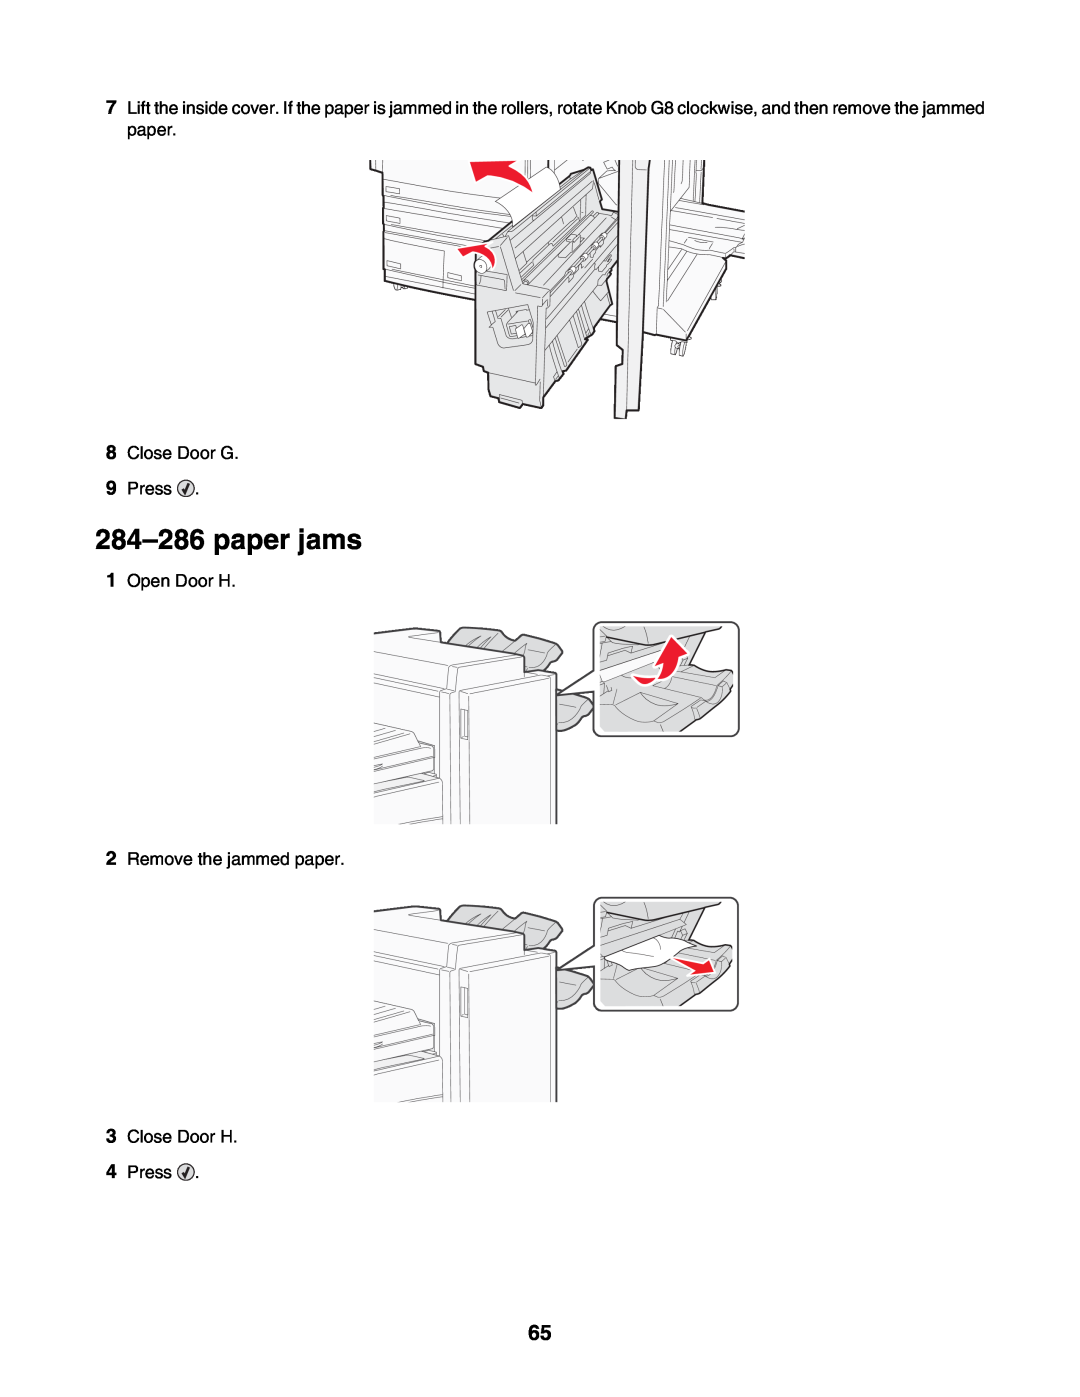 Lexmark C935 manual paper jams, Close Door G 9 Press, Open Door H 2 Remove the jammed paper 3 Close Door H 4 Press 